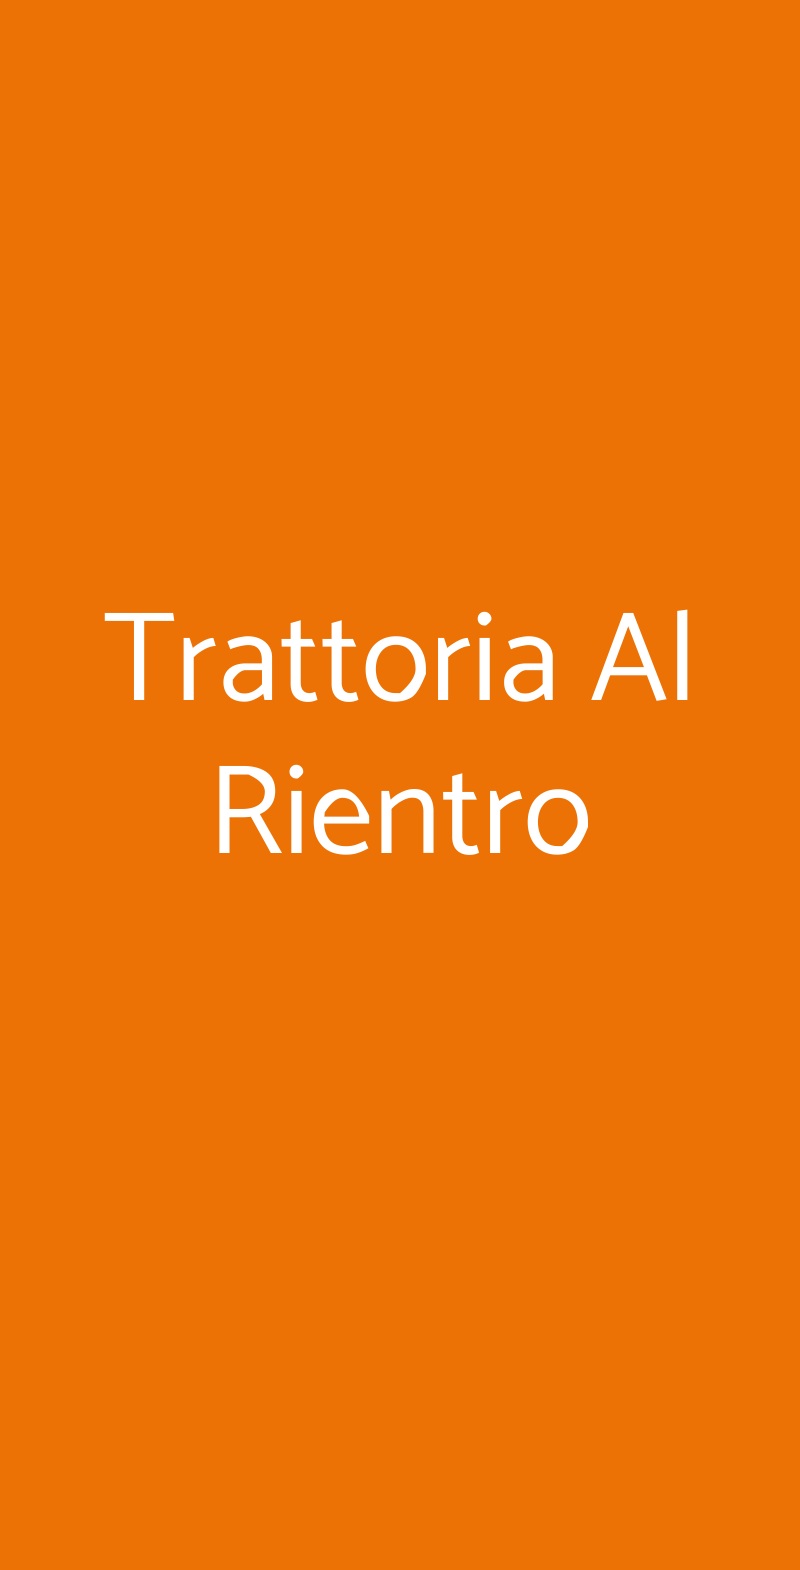 Trattoria Al Rientro Castiglione d'Orcia menù 1 pagina